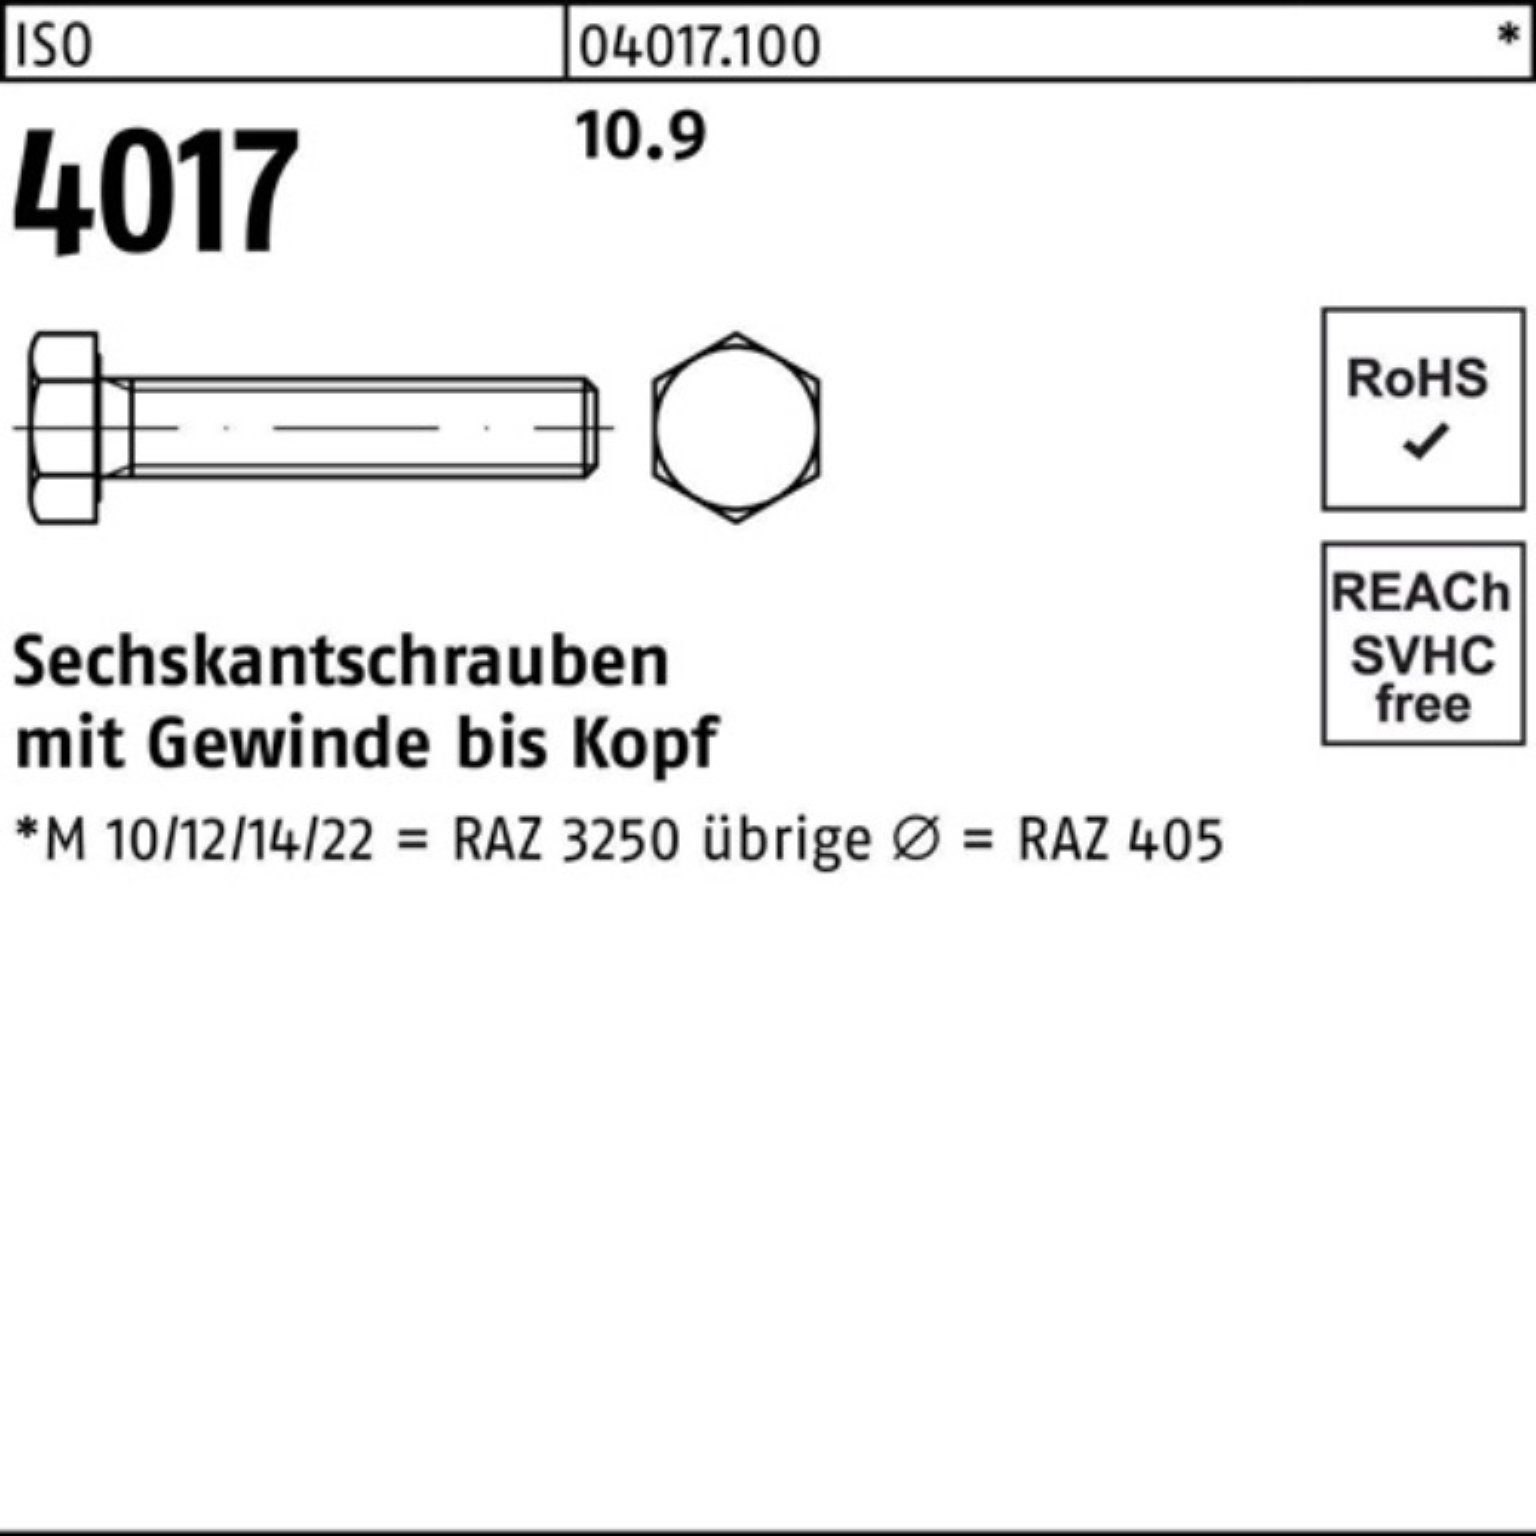 Pack 100 40 Sechskantschraube 10.9 Bufab VG ISO ISO Sechskantschraube M42x 1 Stück 4017 100er